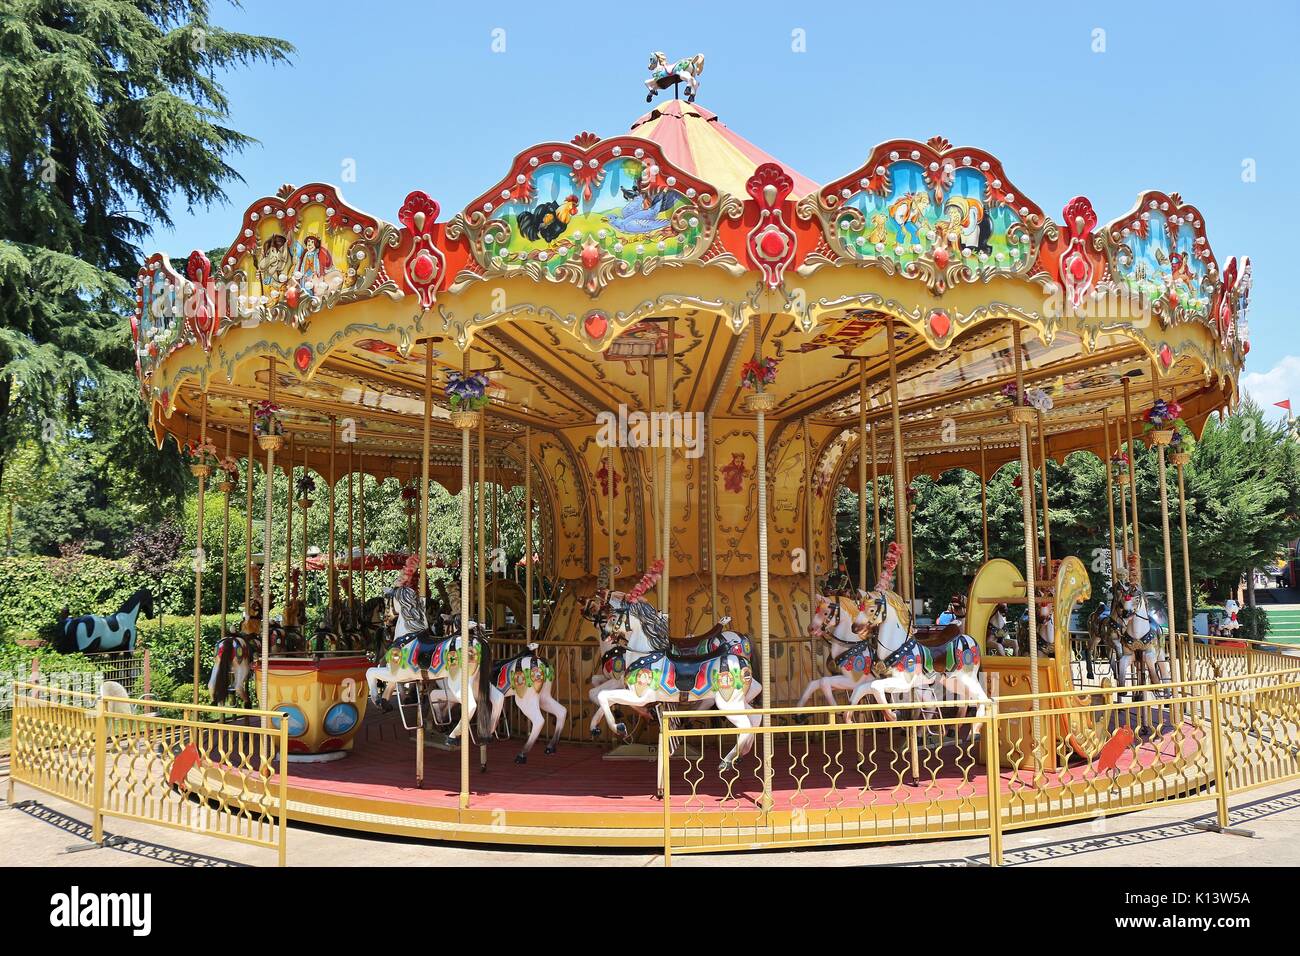 Die Nostalgie Kinder Karussell in einem Fun Park im Zentrum von Tirana, Albanien. Südosteuropa. Stockfoto